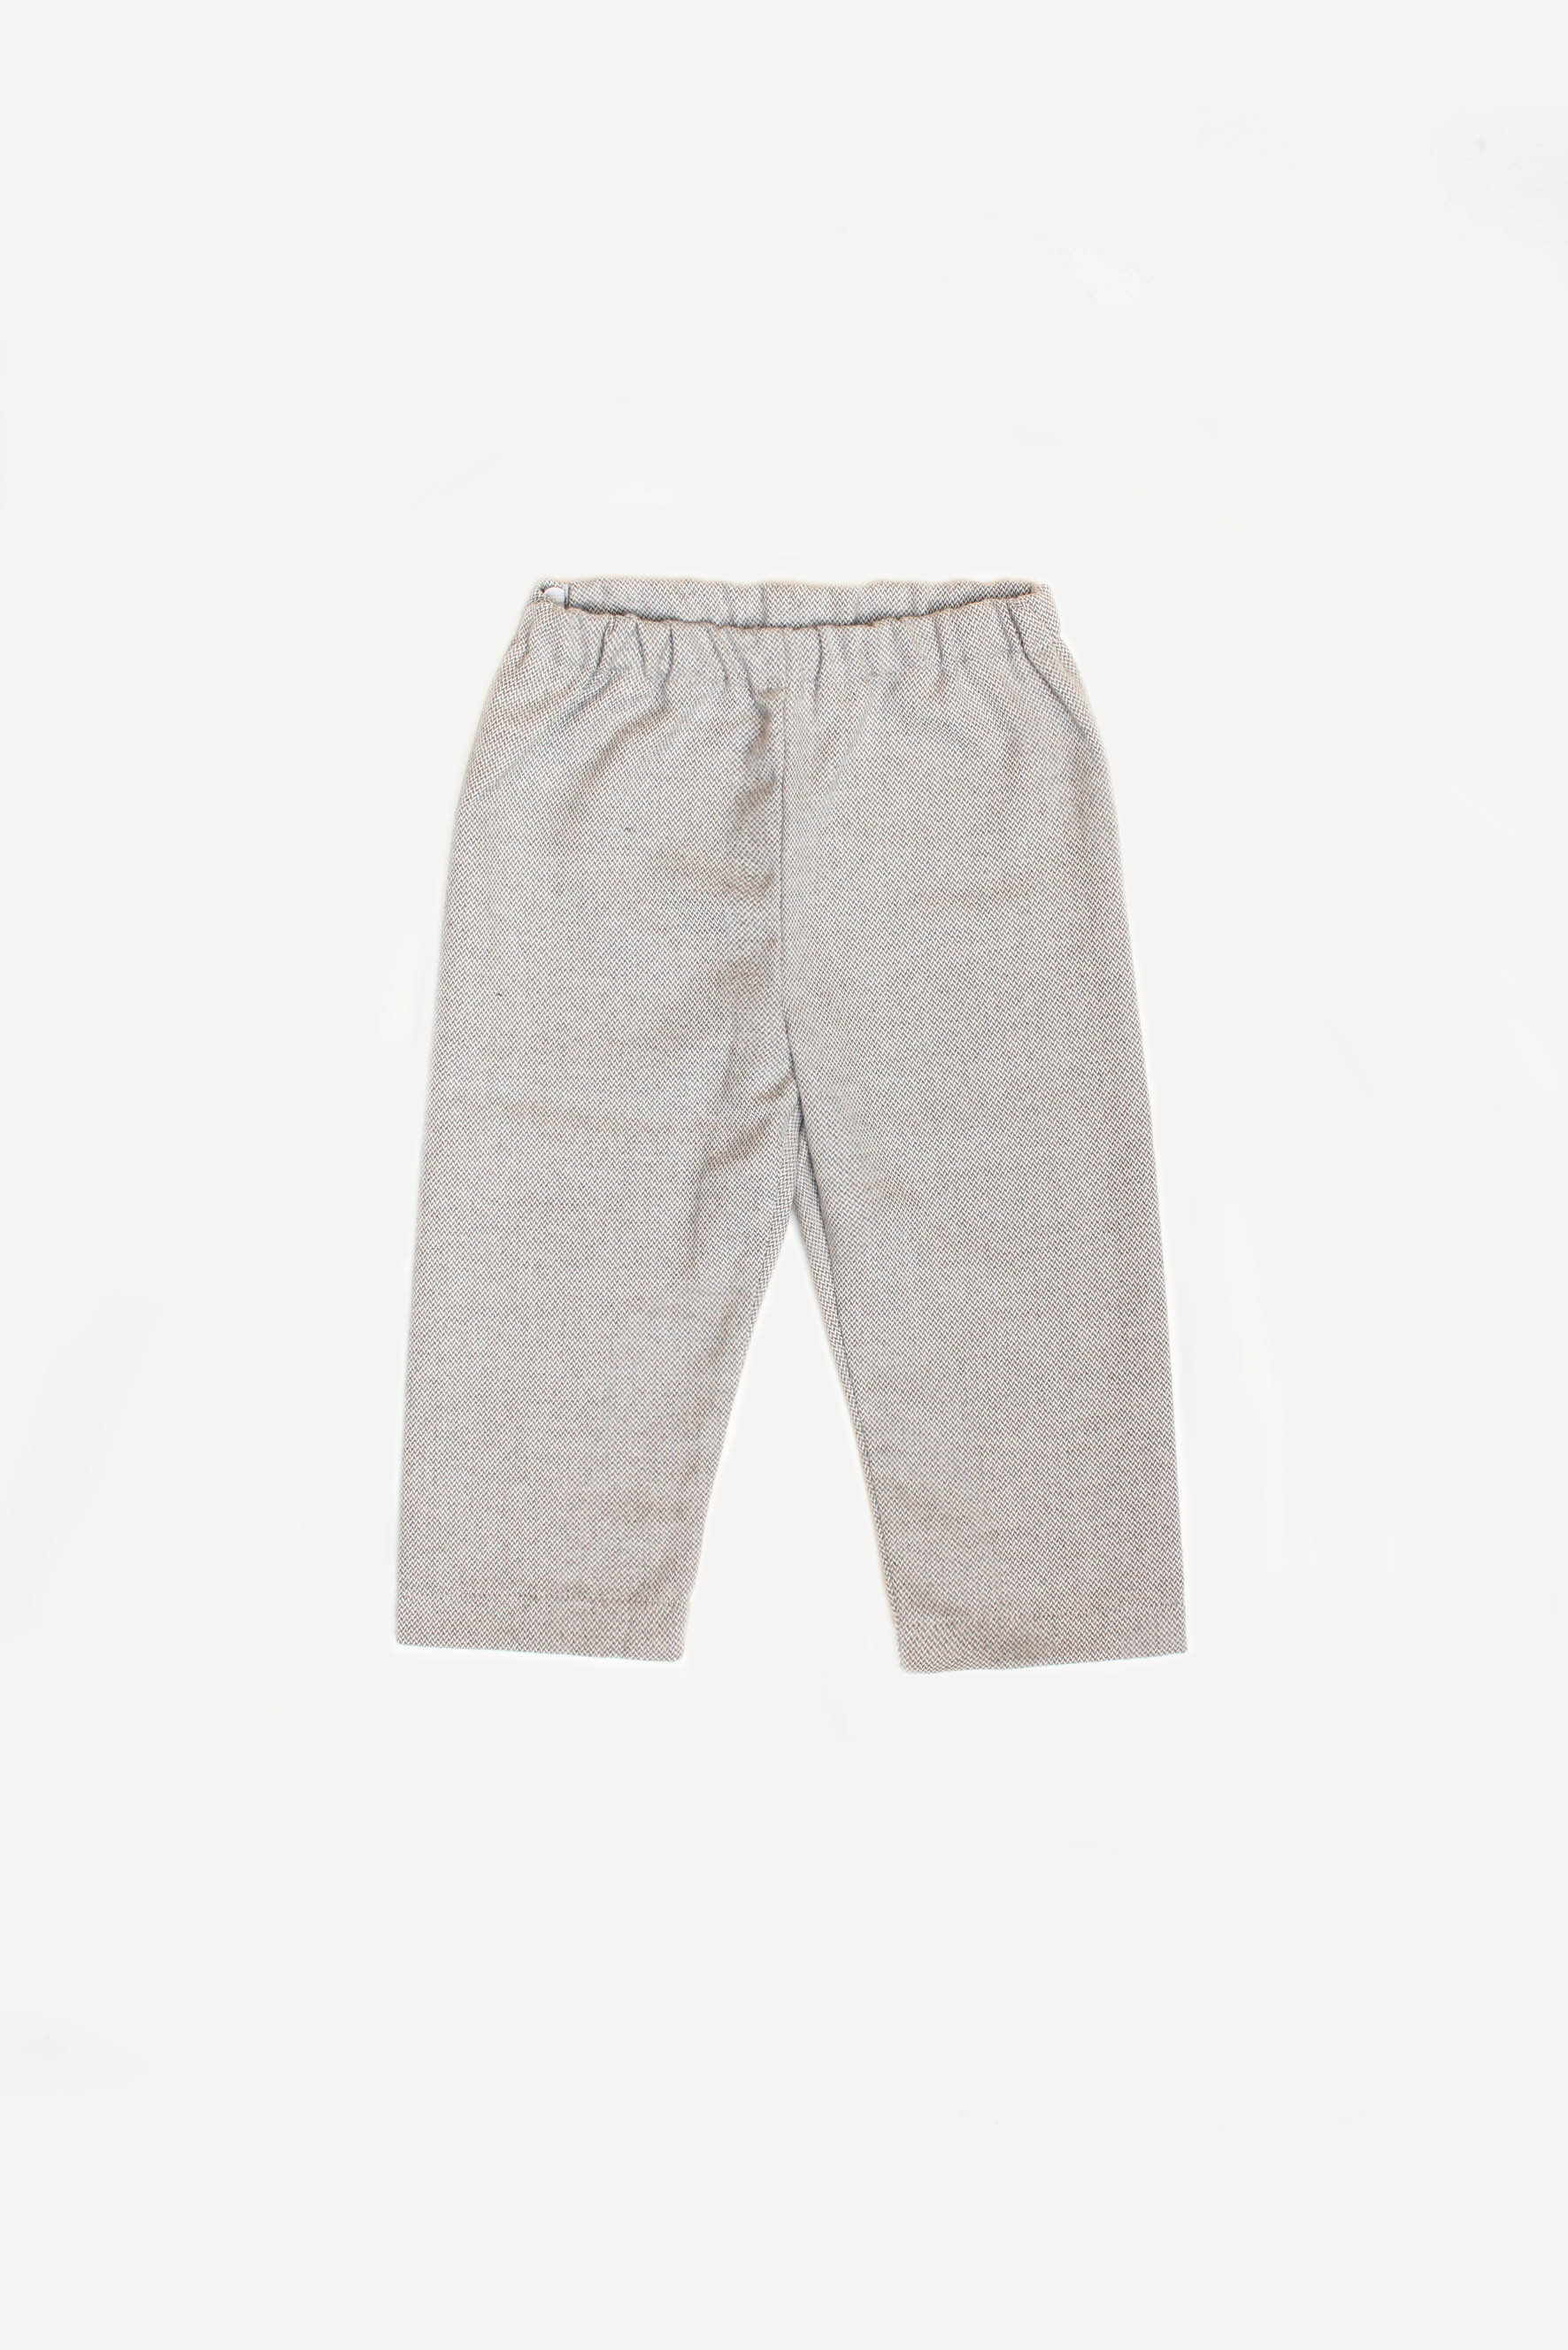 Pantaloni bambino in spigato grigio